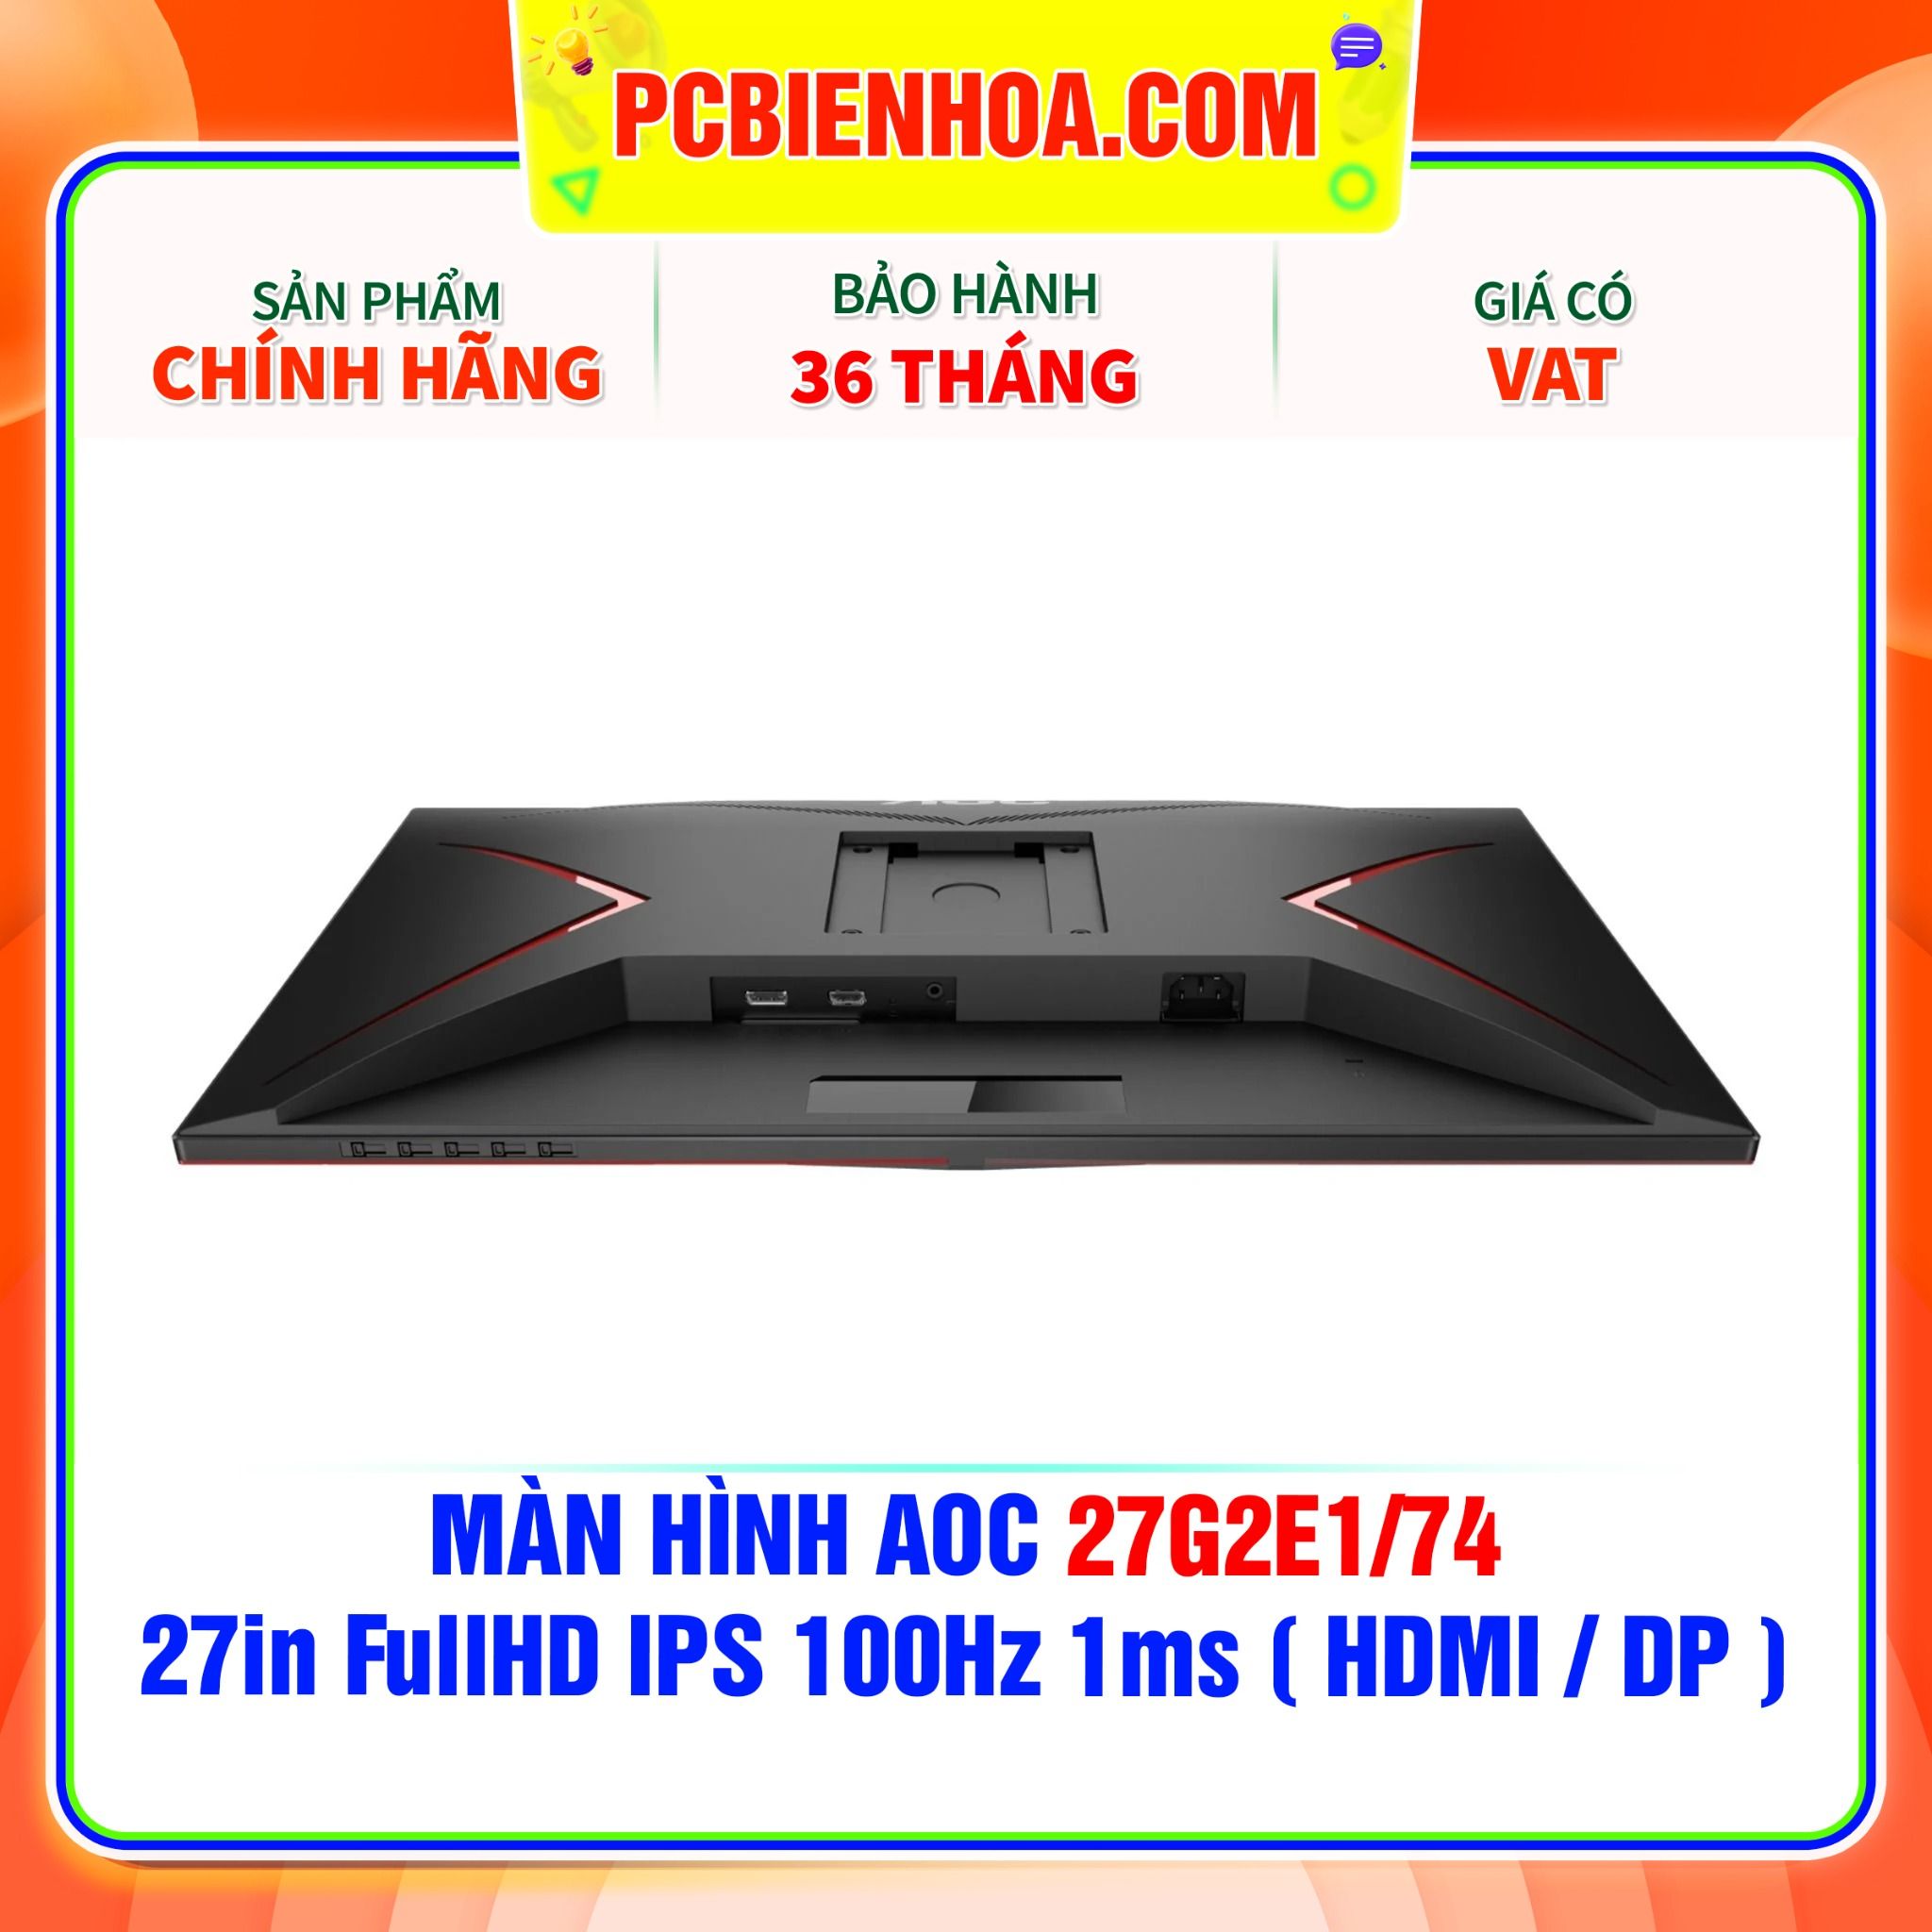  MÀN HÌNH AOC 27G2E1/74 - 27in FullHD IPS 100Hz 1ms ( HDMI / DP ) 